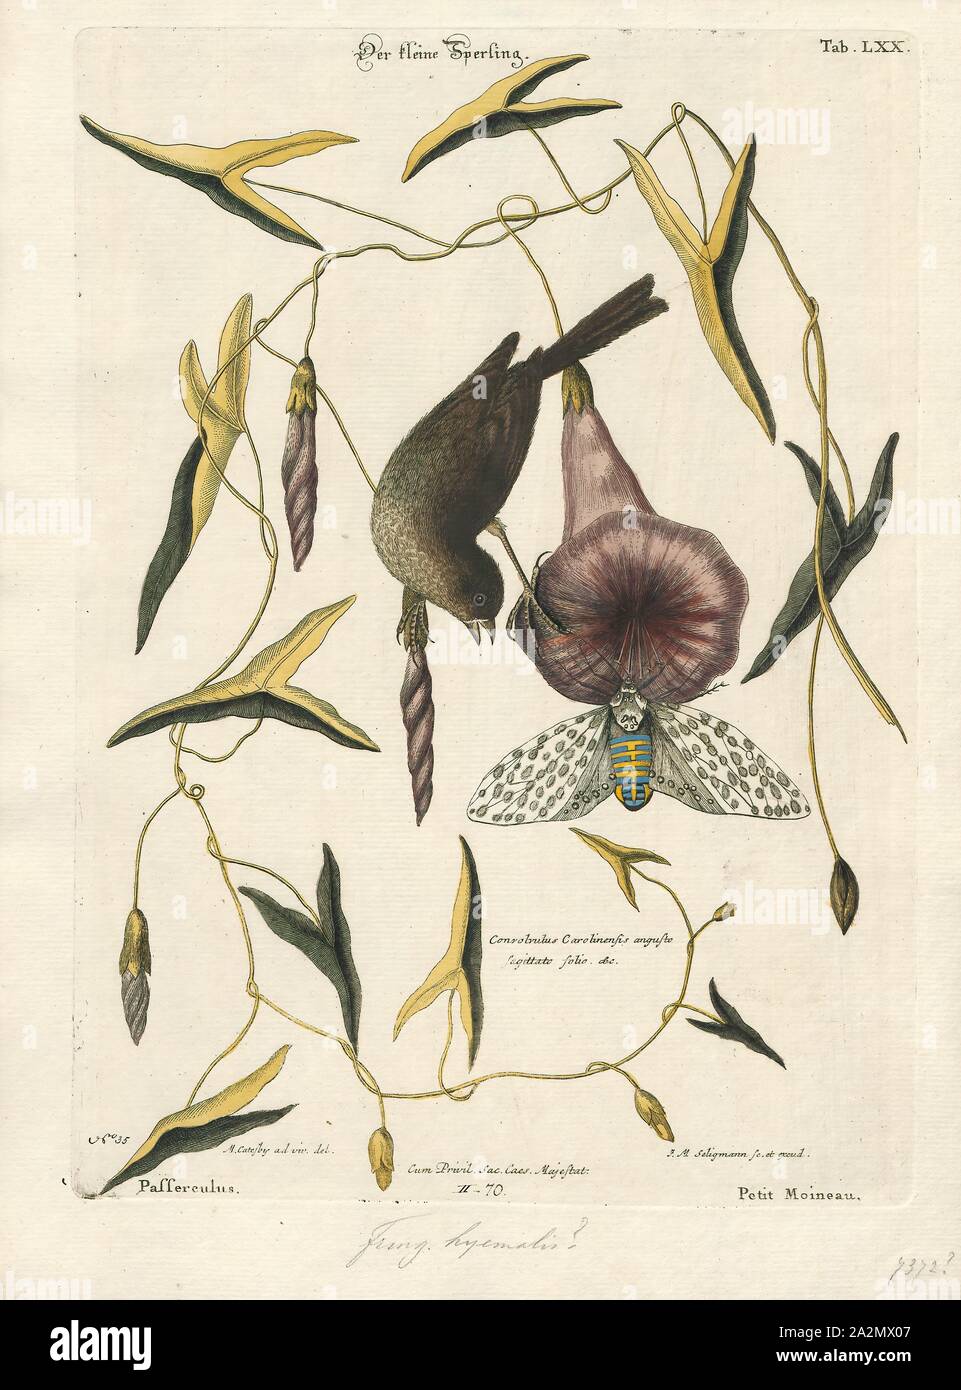 Junco hyemalis, Imprimer, le junco ardoisé (Junco hyemalis) est une espèce de juncos, un genre de small grayish American moineaux. Cet oiseau est commun dans la majeure partie de l'Europe, Amérique du Nord et à l'été s'étend loin dans l'Arctique. C'est une très variable, tout comme le Bruant fauve Passerella iliaca (Fox), et sa systématique ne sont pas encore complètement démêlés., 1700-1880 Banque D'Images